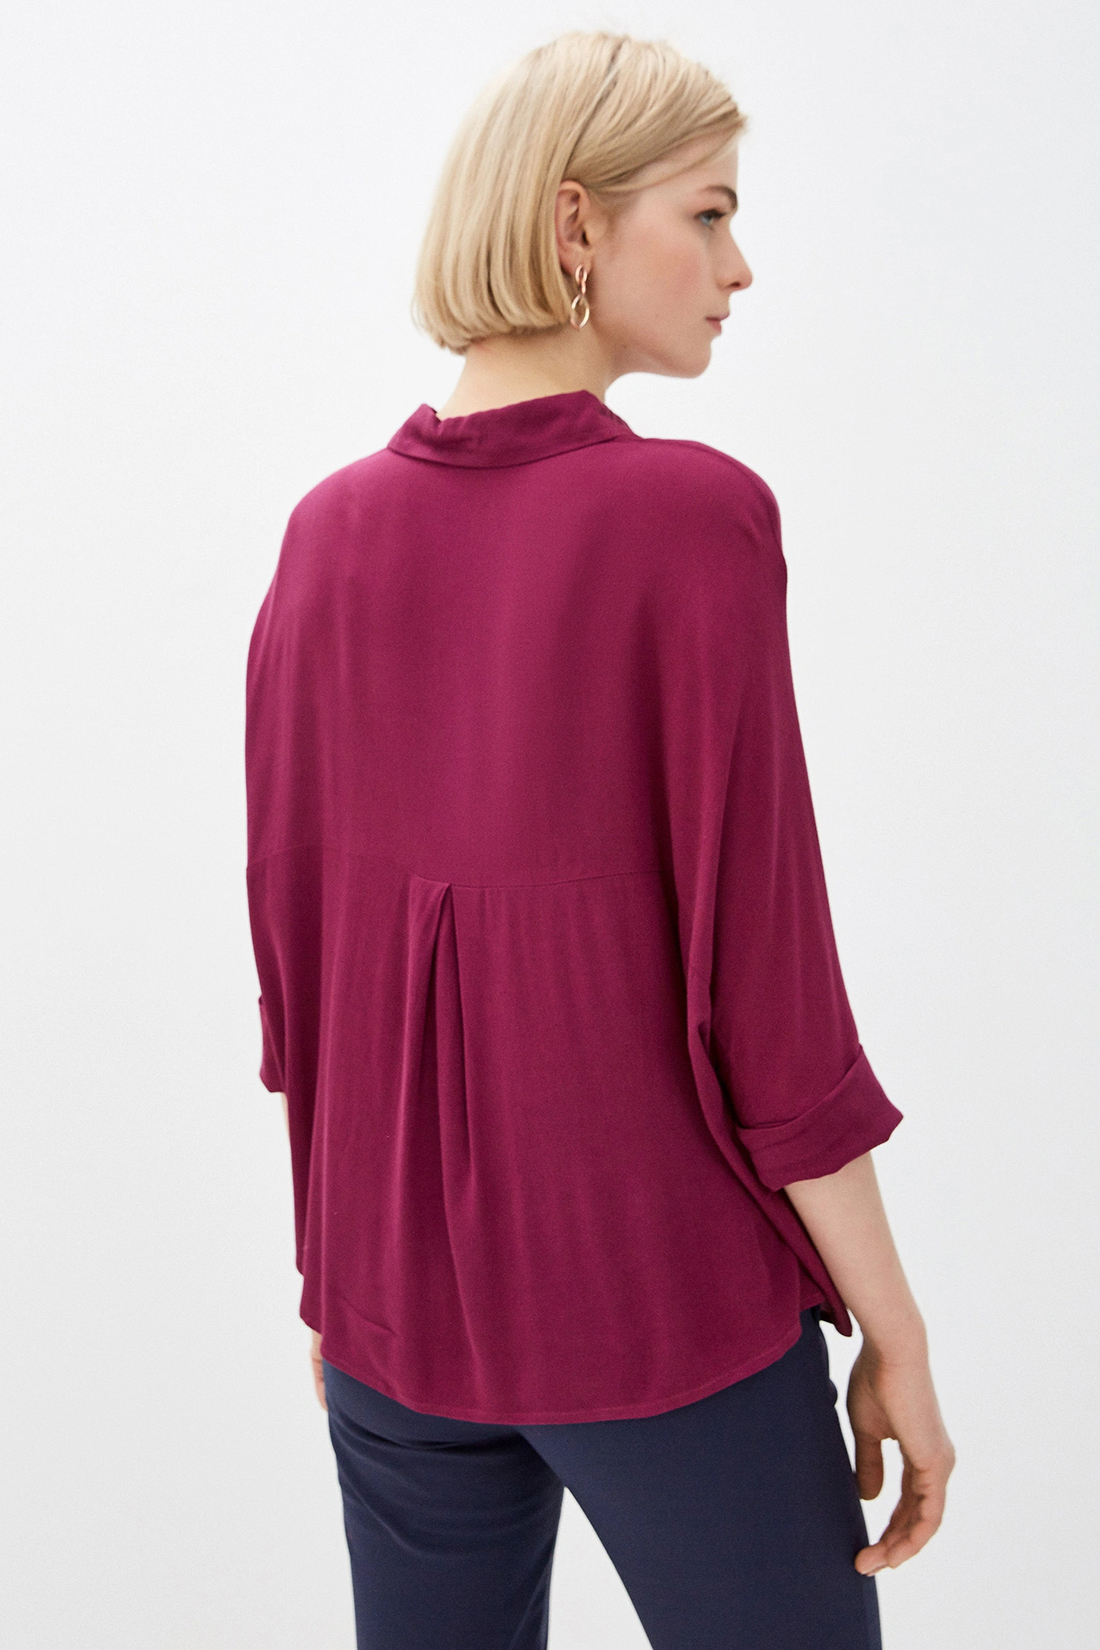 Рубашка в стиле оверсайз (арт. baon B170012), размер XXL, цвет красный Рубашка в стиле оверсайз (арт. baon B170012) - фото 2